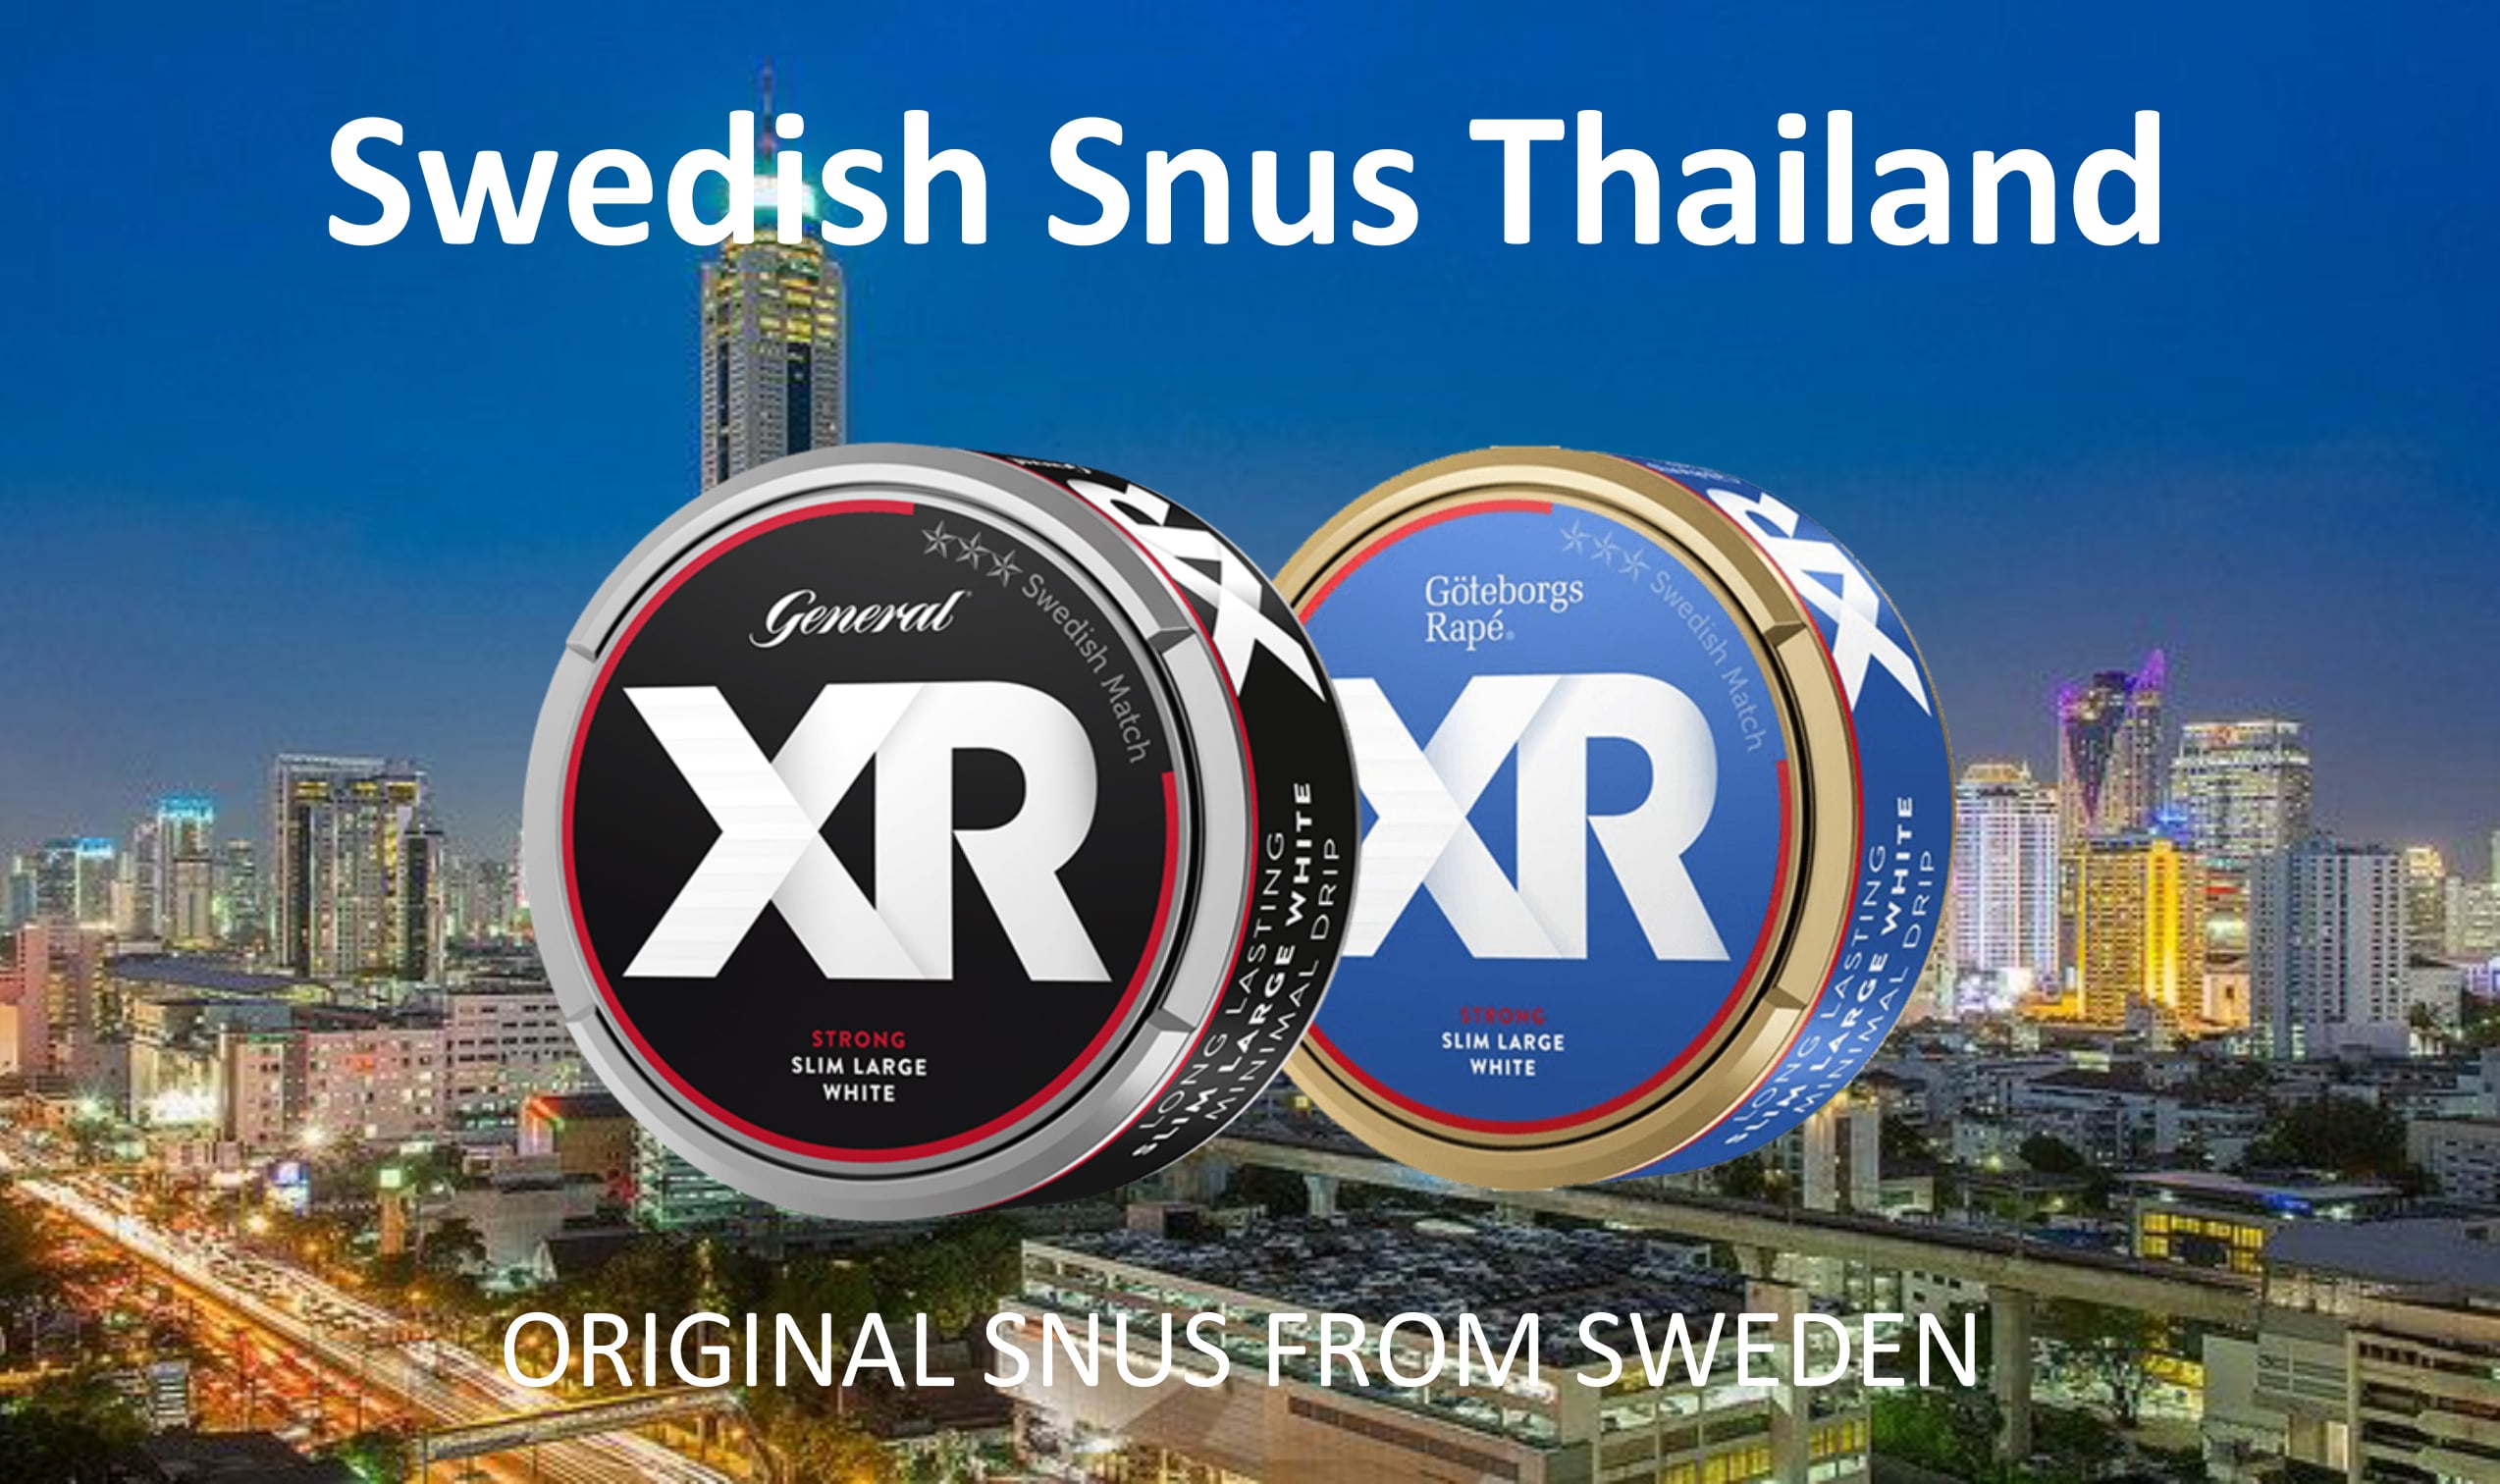 Swedish Snus Thailand